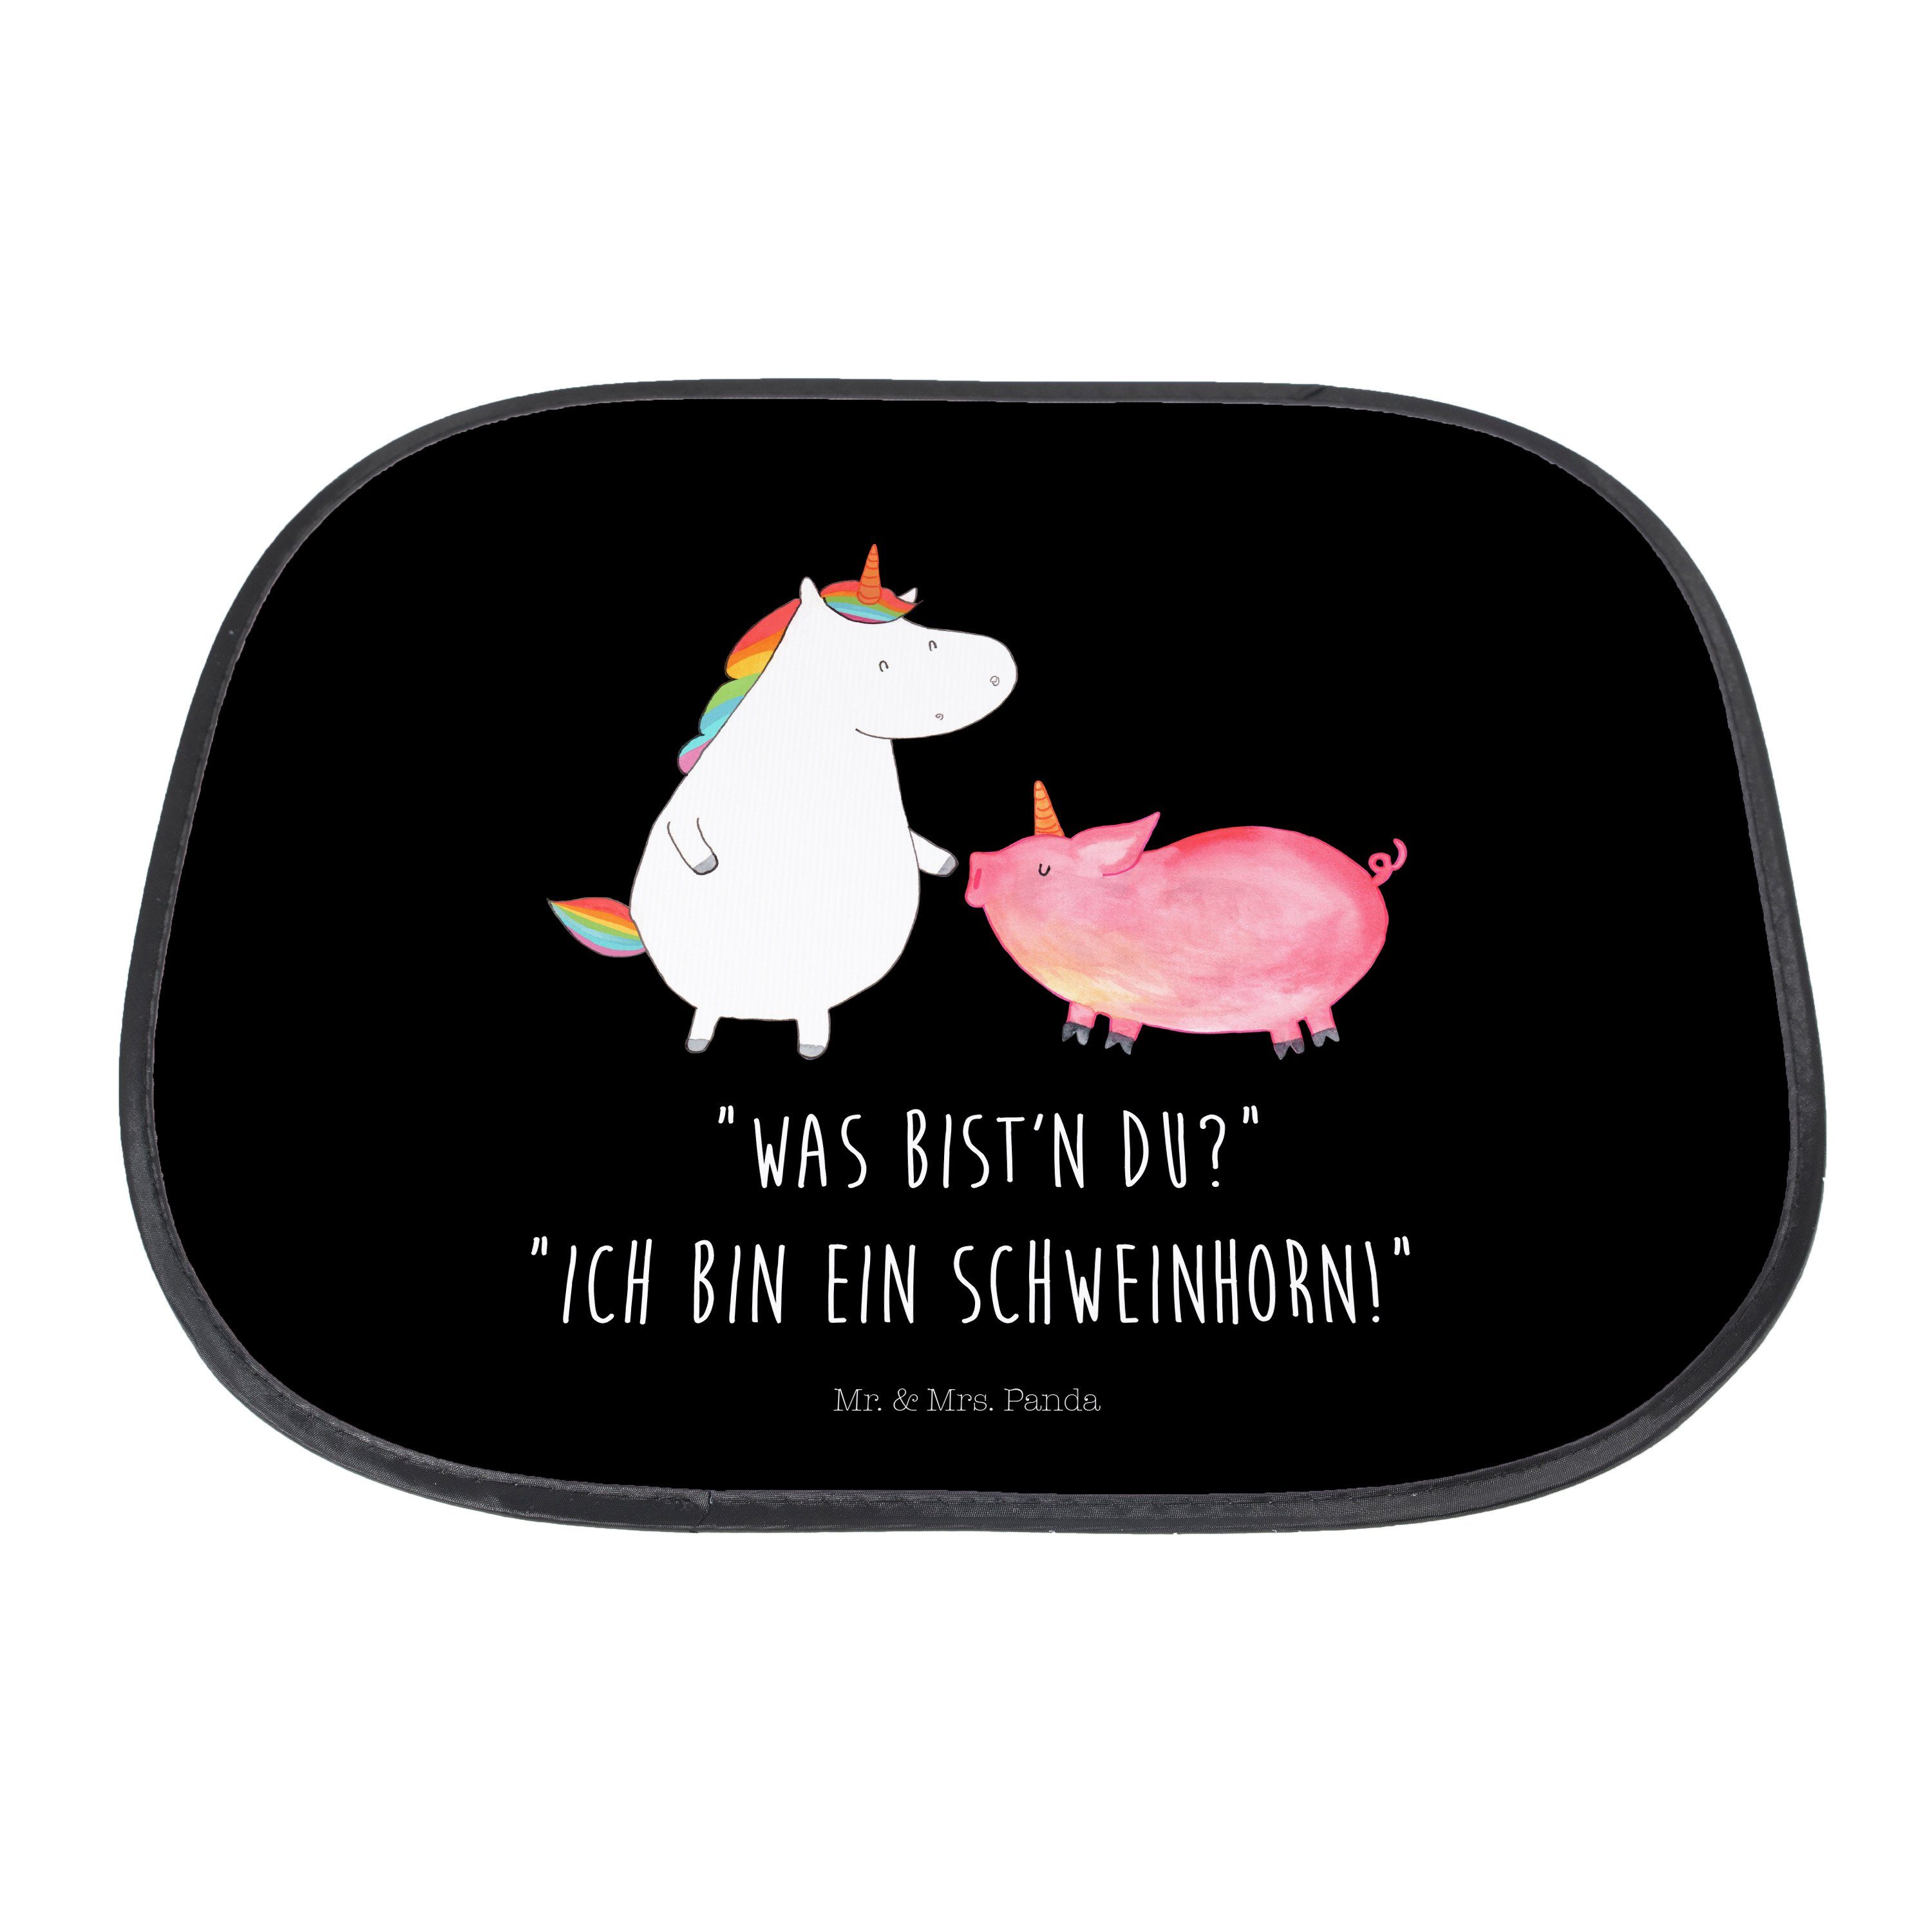 + - Sonne Schwarz Panda, Auto, Geschenk, Einhorn Sonnenblende, Seidenmatt Sonnenschutz & Mrs. - Mr. Schweinhorn